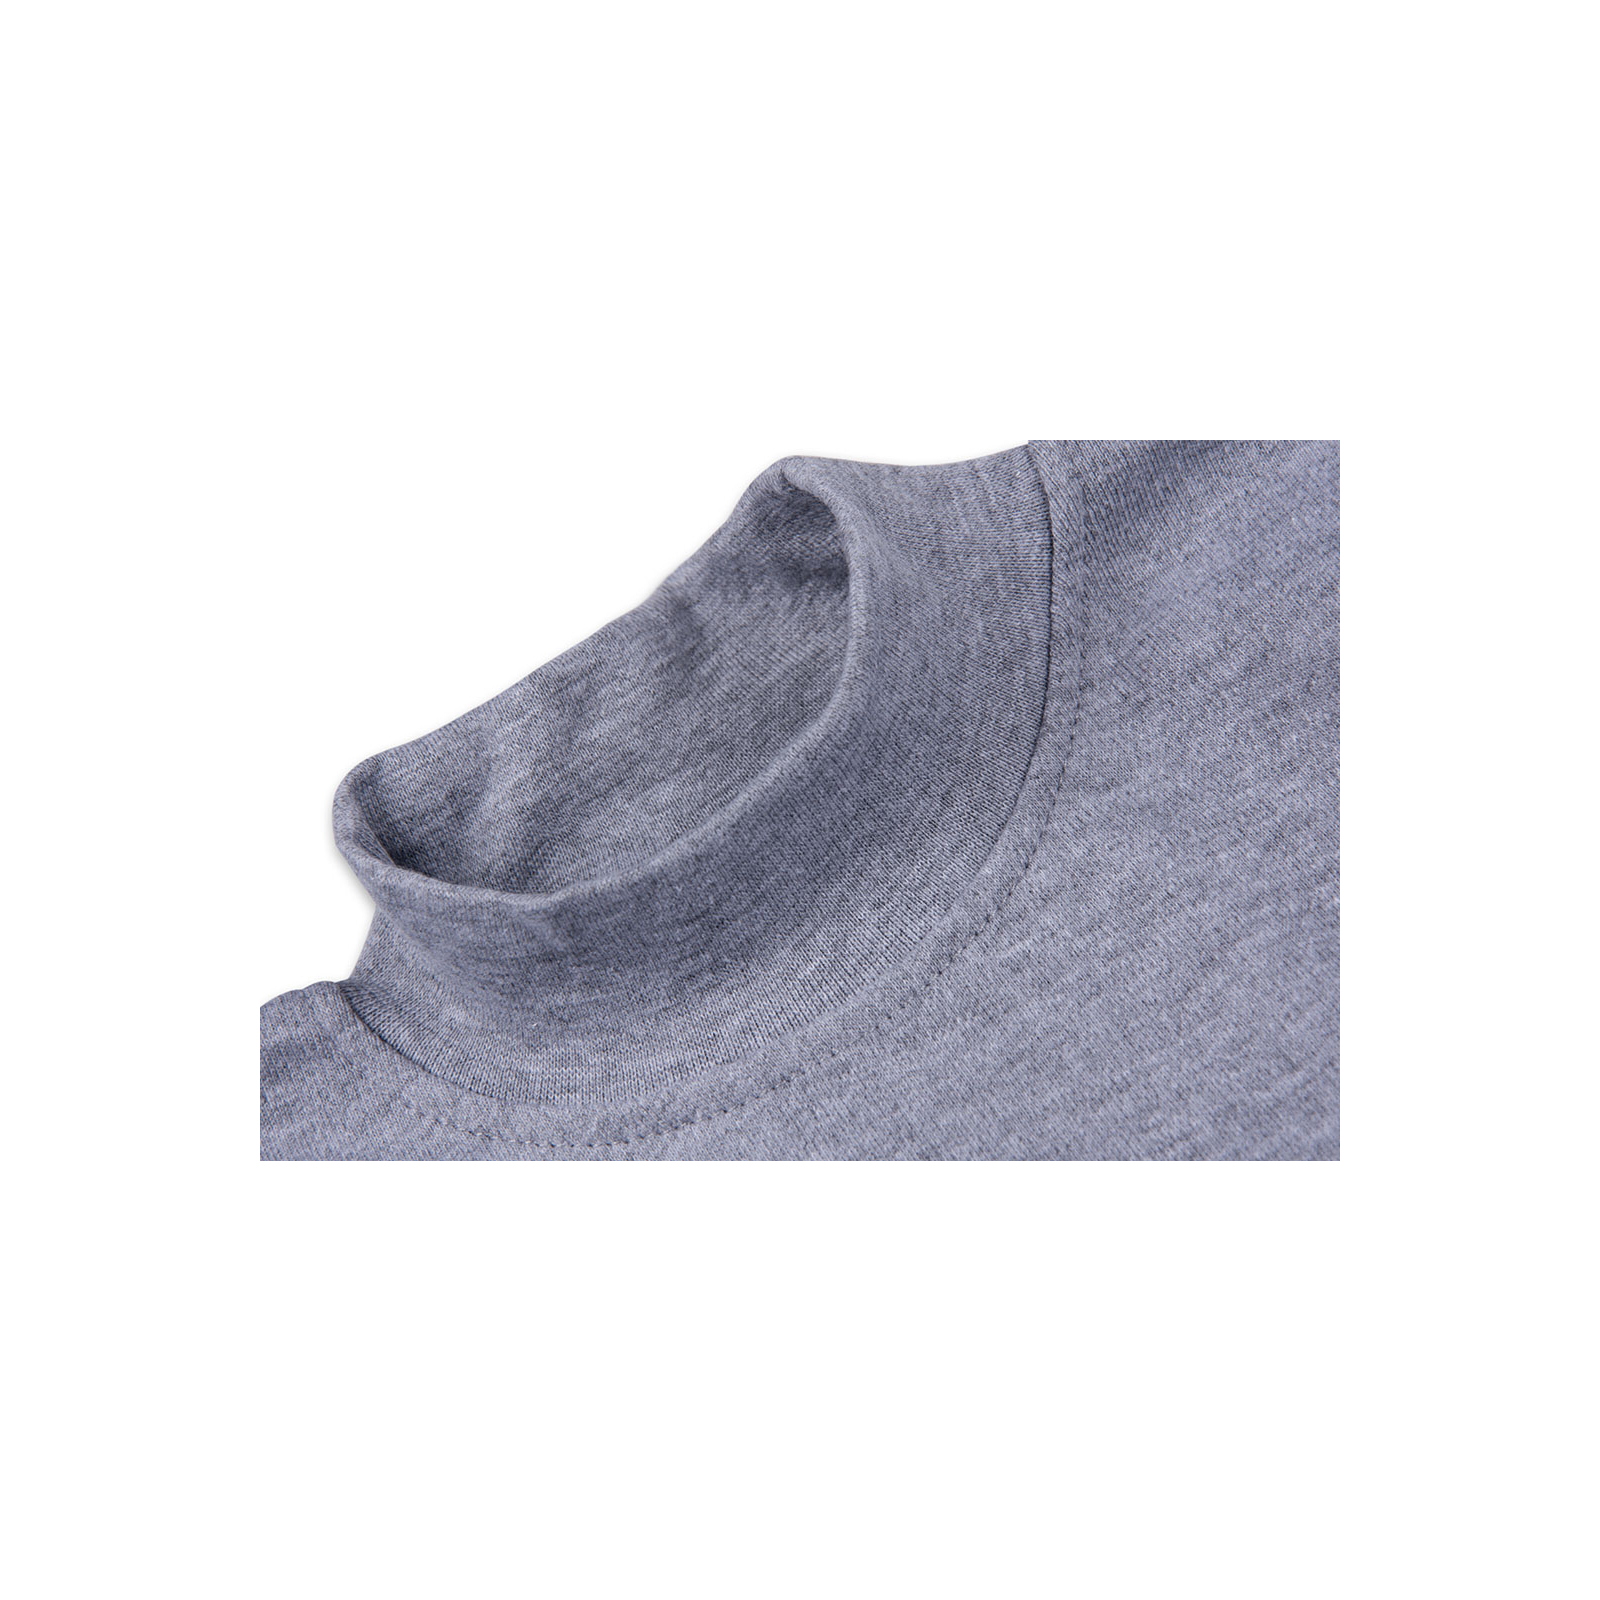 Кофта Lovetti водолазка сіра меланжева (1012-116-gray) зображення 3